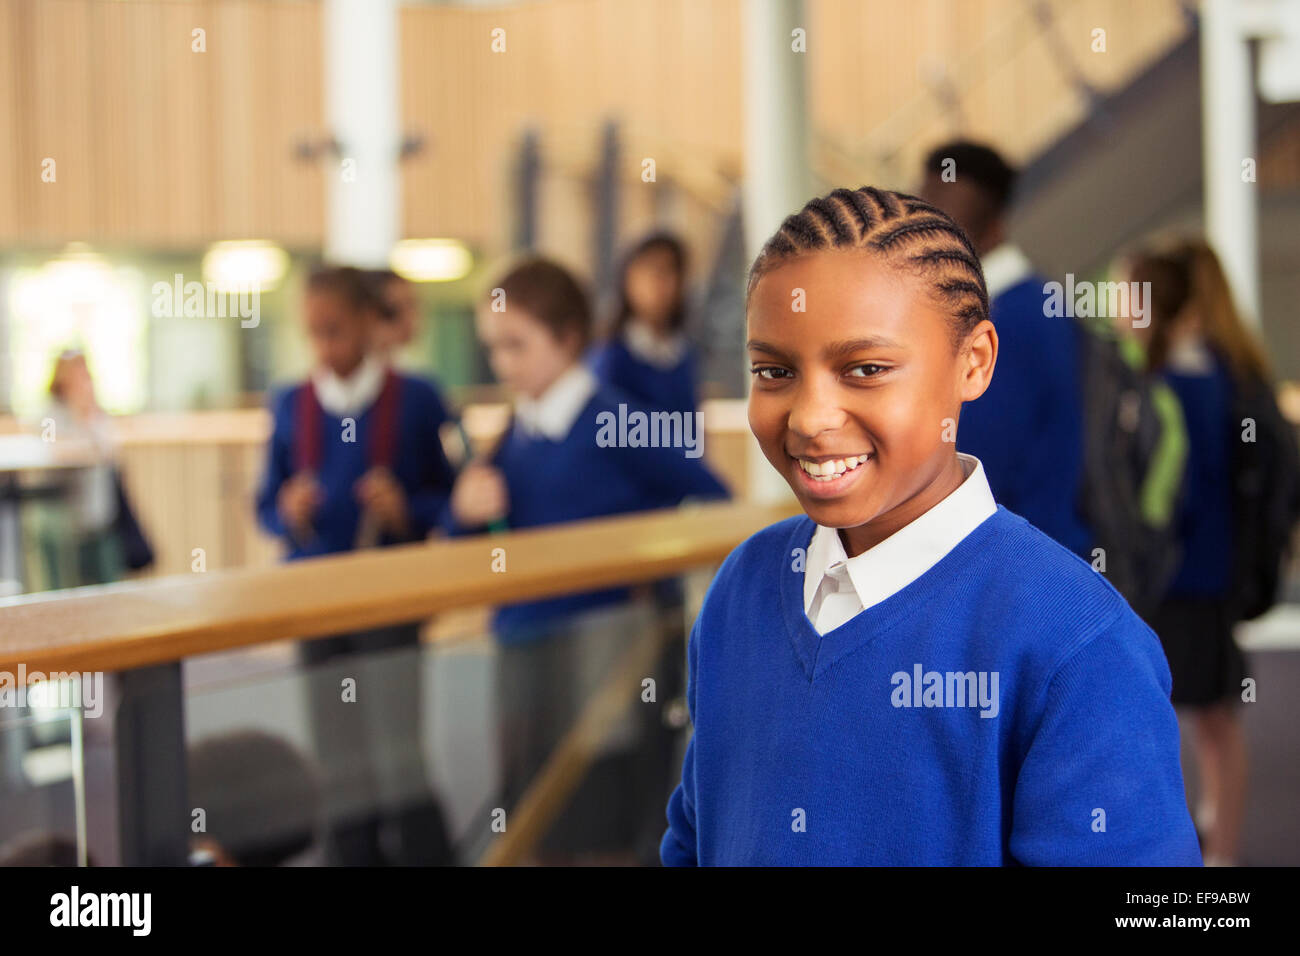 Portrait of elementary school girl wearing blue school uniform standing in school corridor Banque D'Images